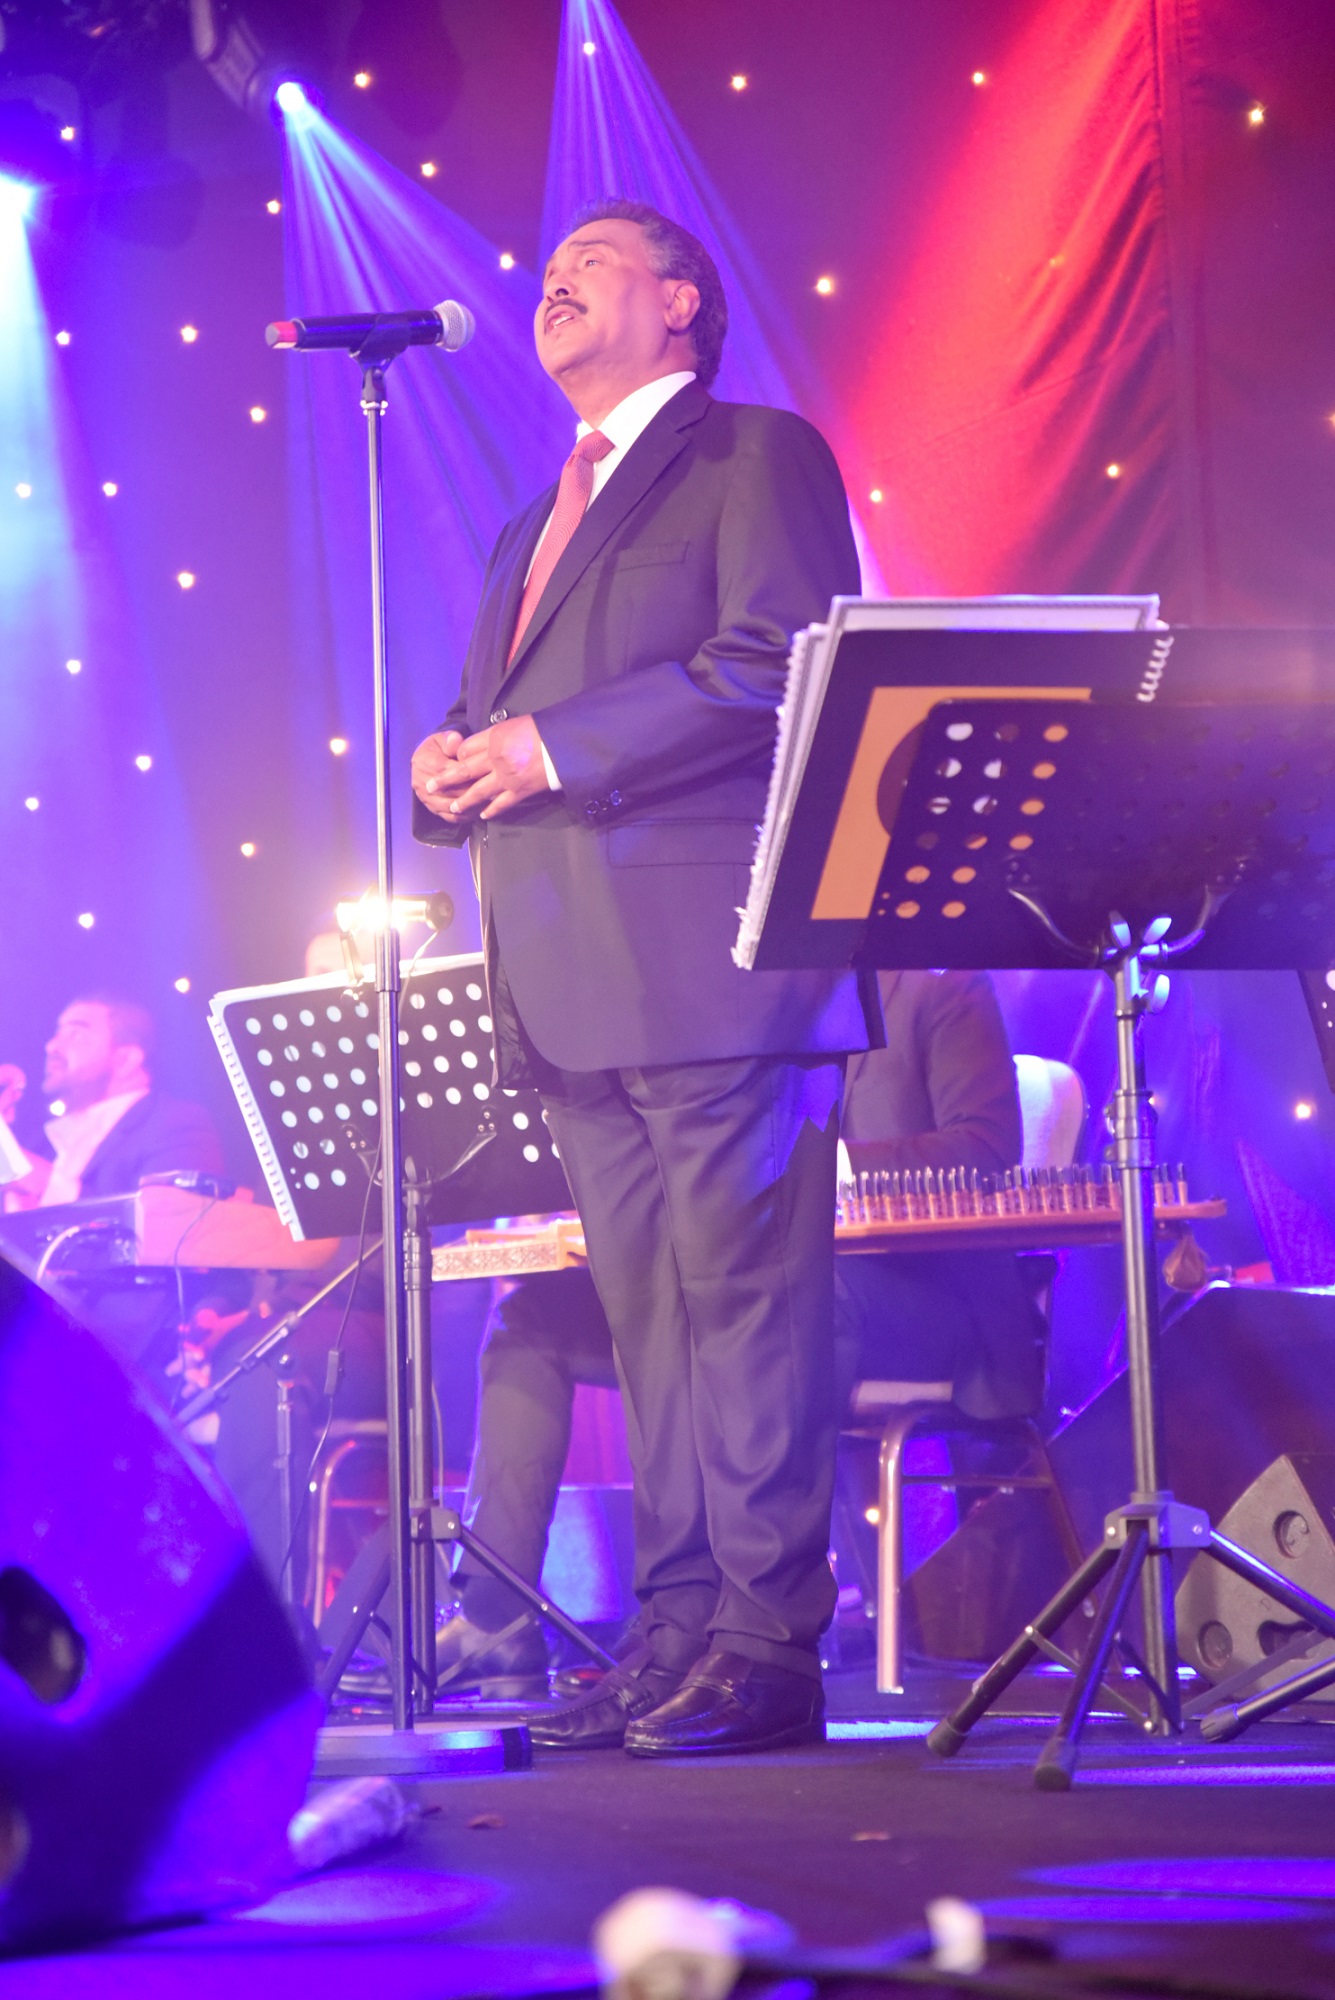 صورة نجاح كبير لحفل النجم الكبير محمد عبده في لندن